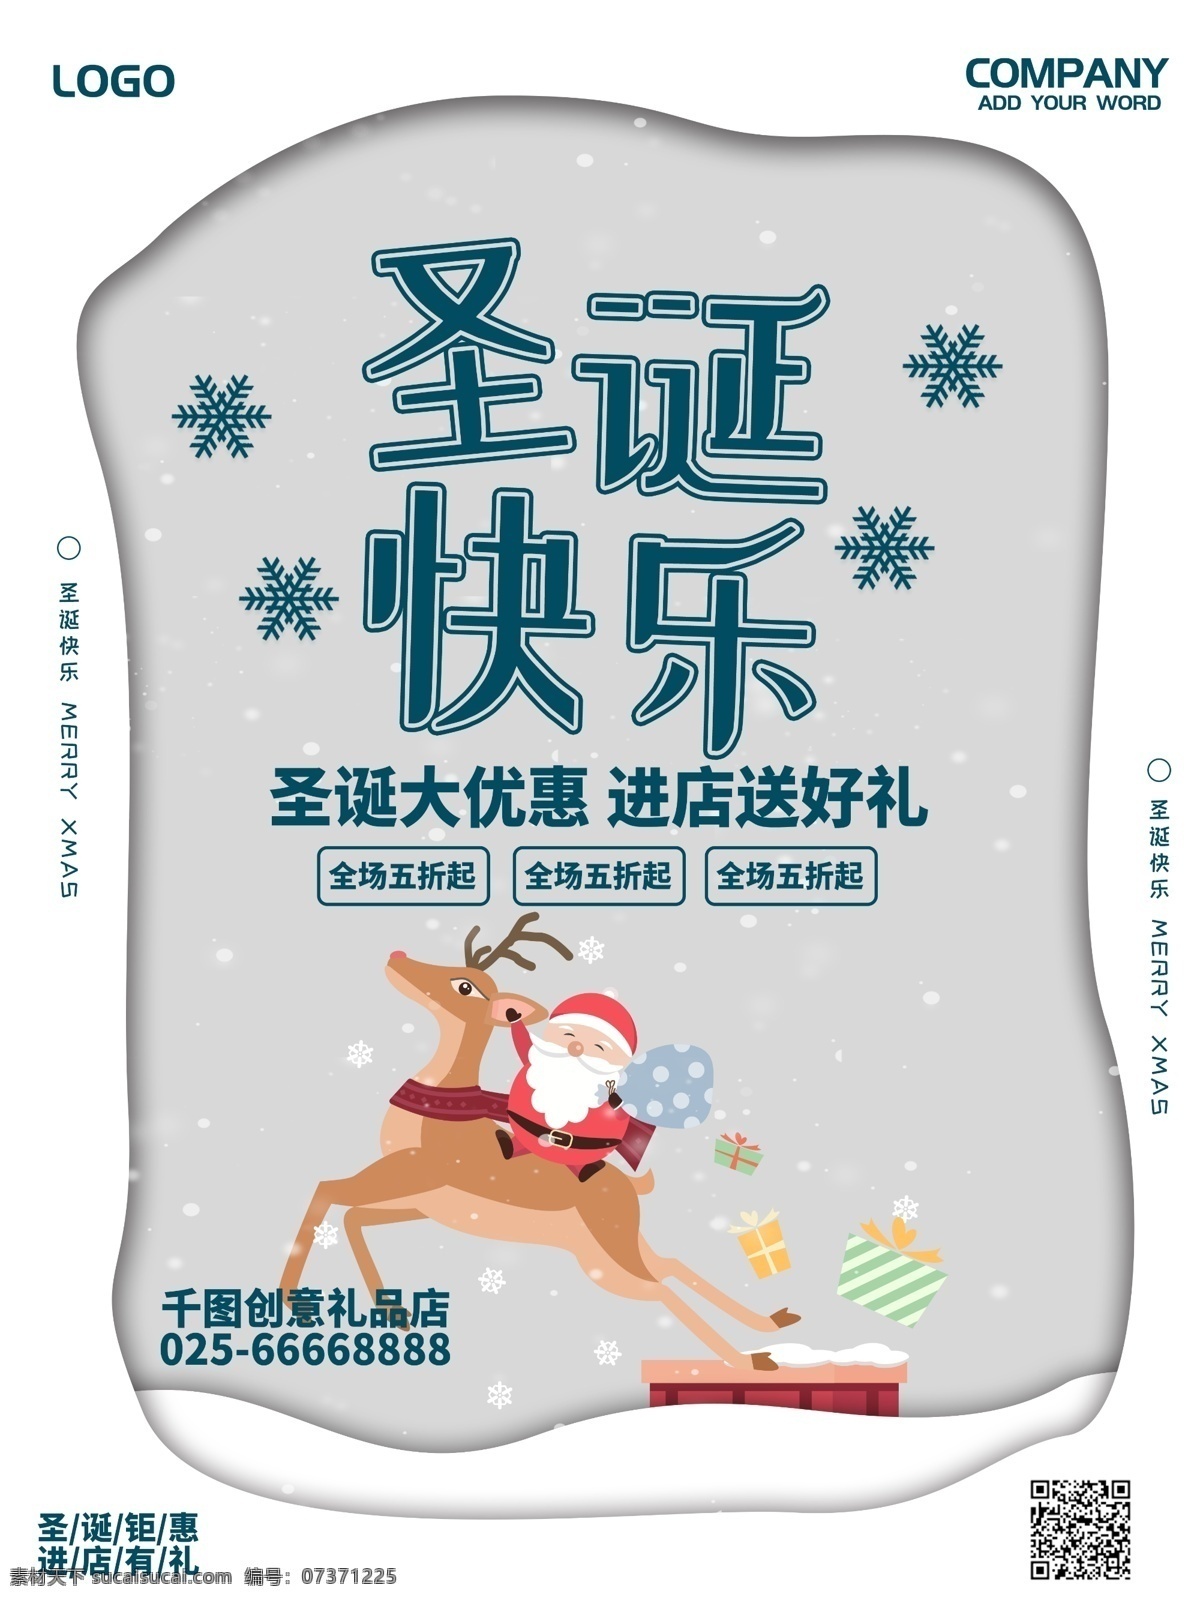 创意 圣诞快乐 节日 促销 海报 圣诞老人 雪花 礼物 圣诞 麋鹿 活动